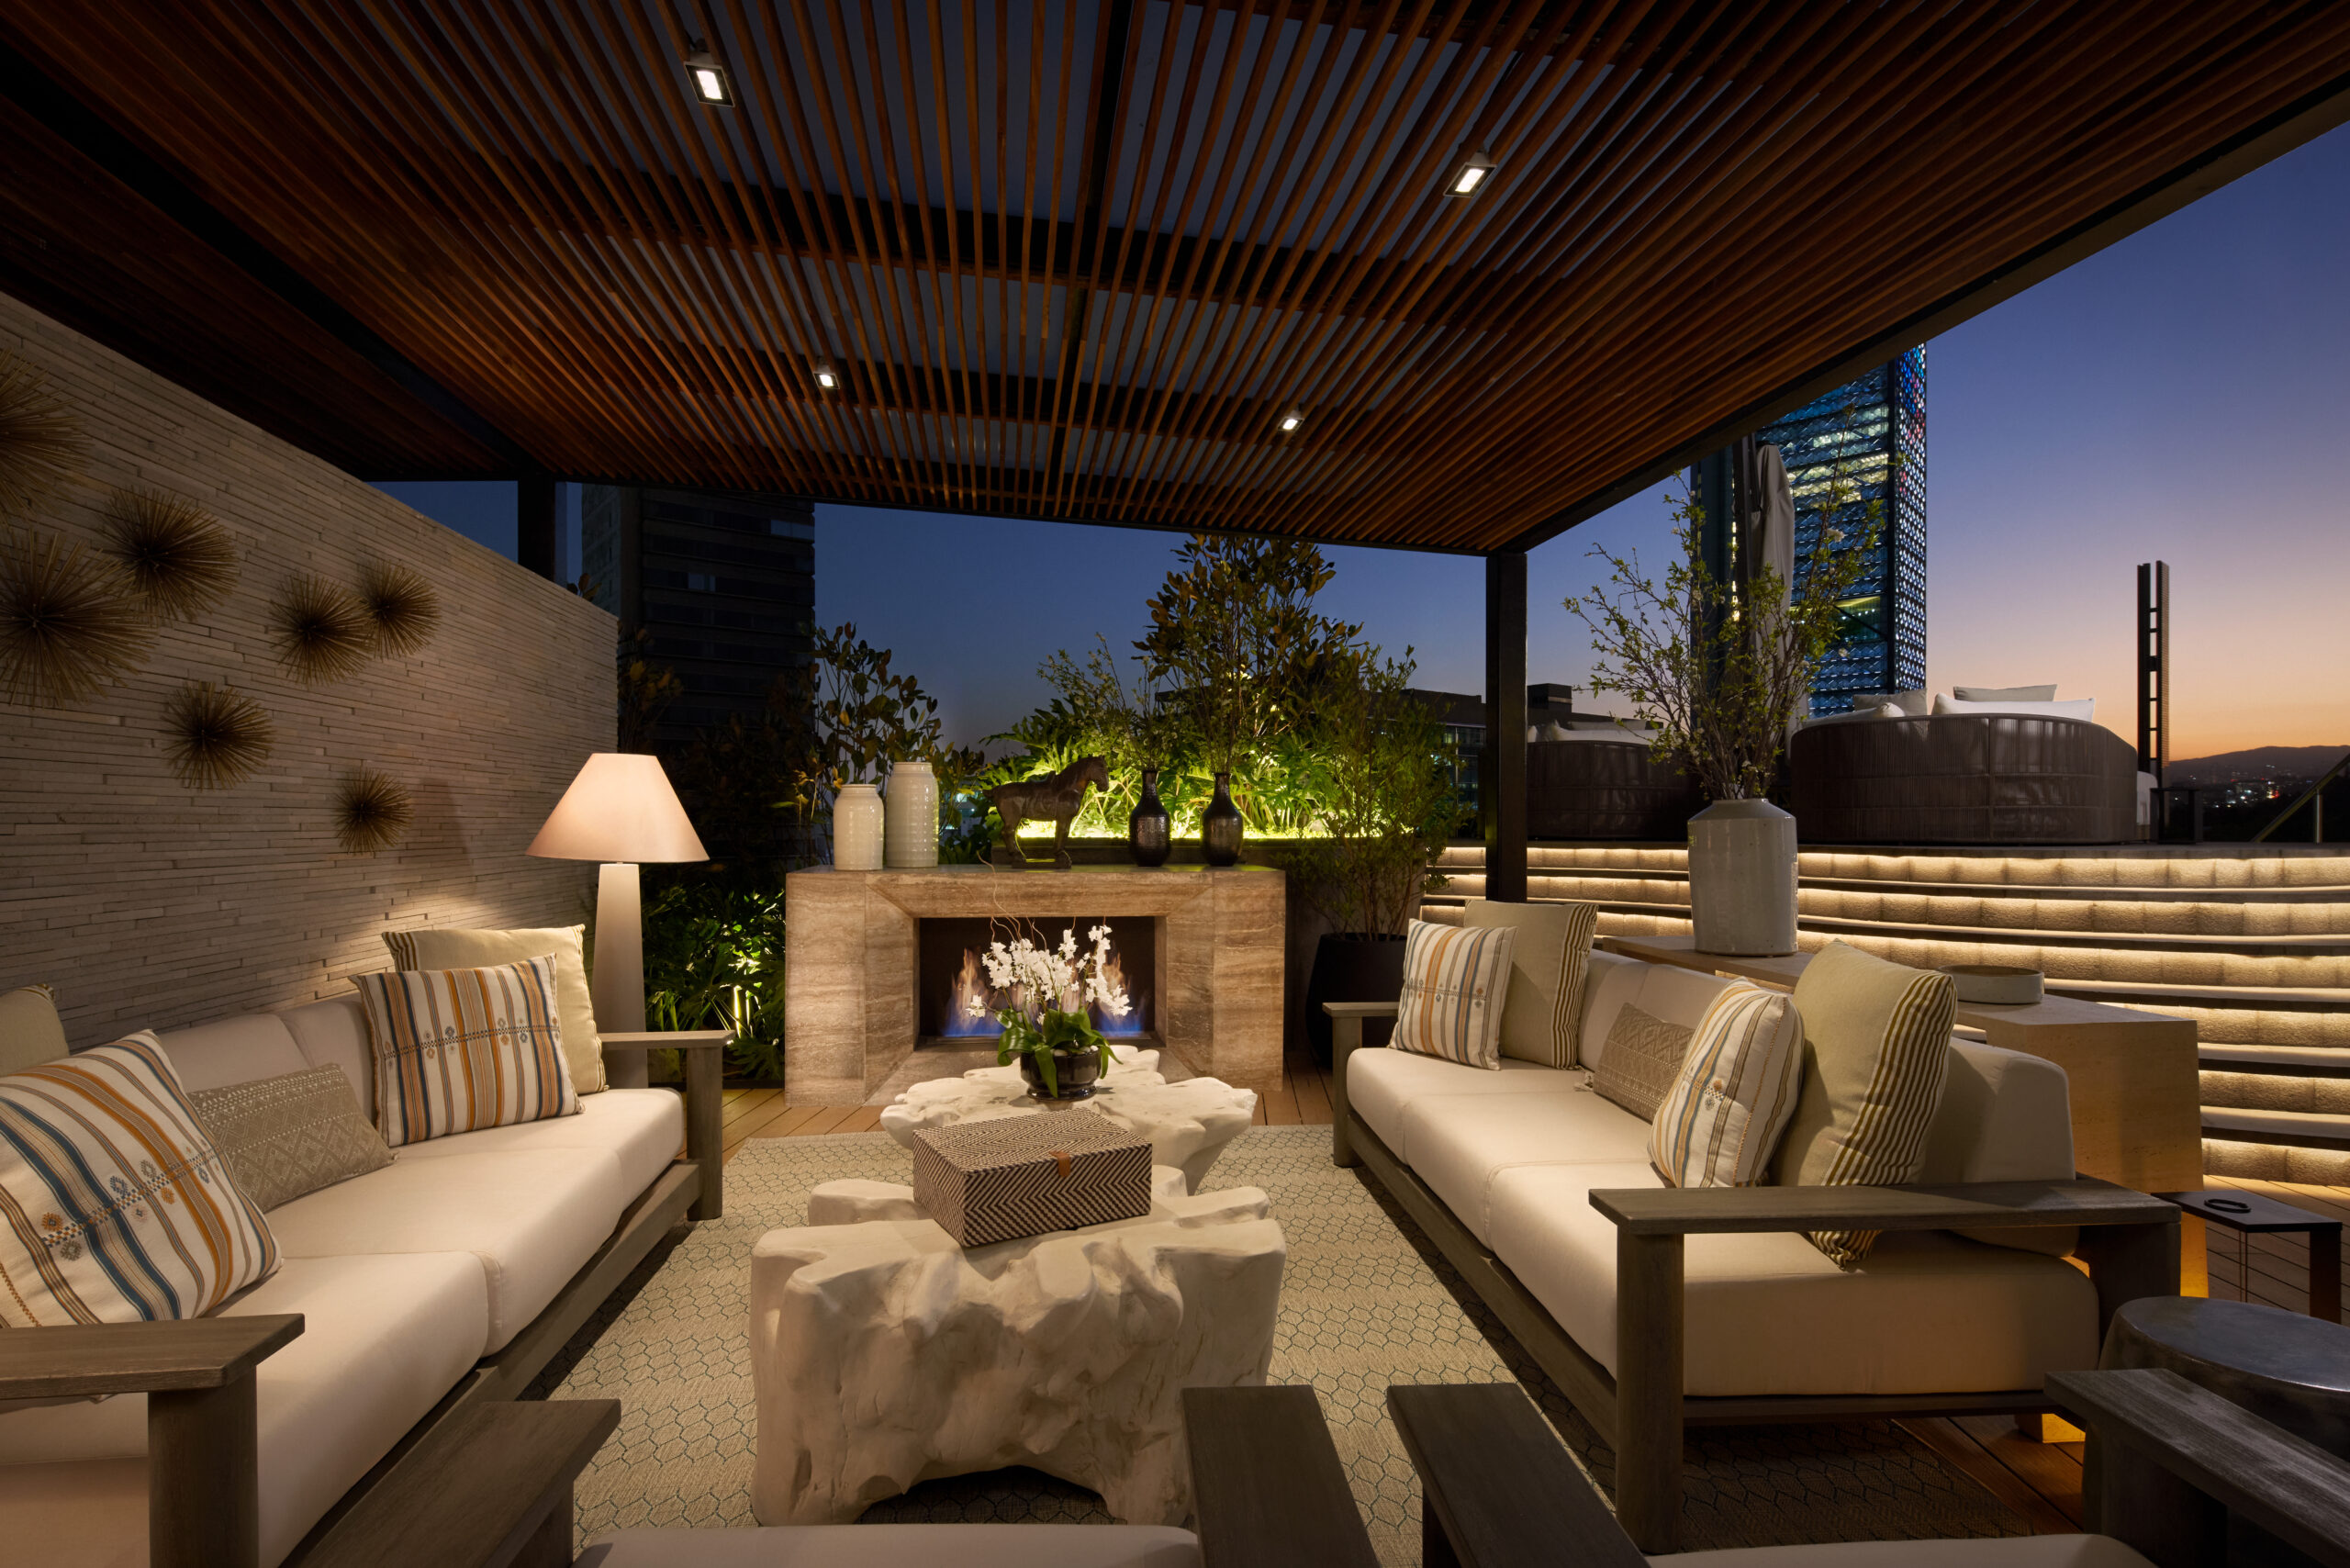 St. Regis Mexico City unveils stunning new terrace suites